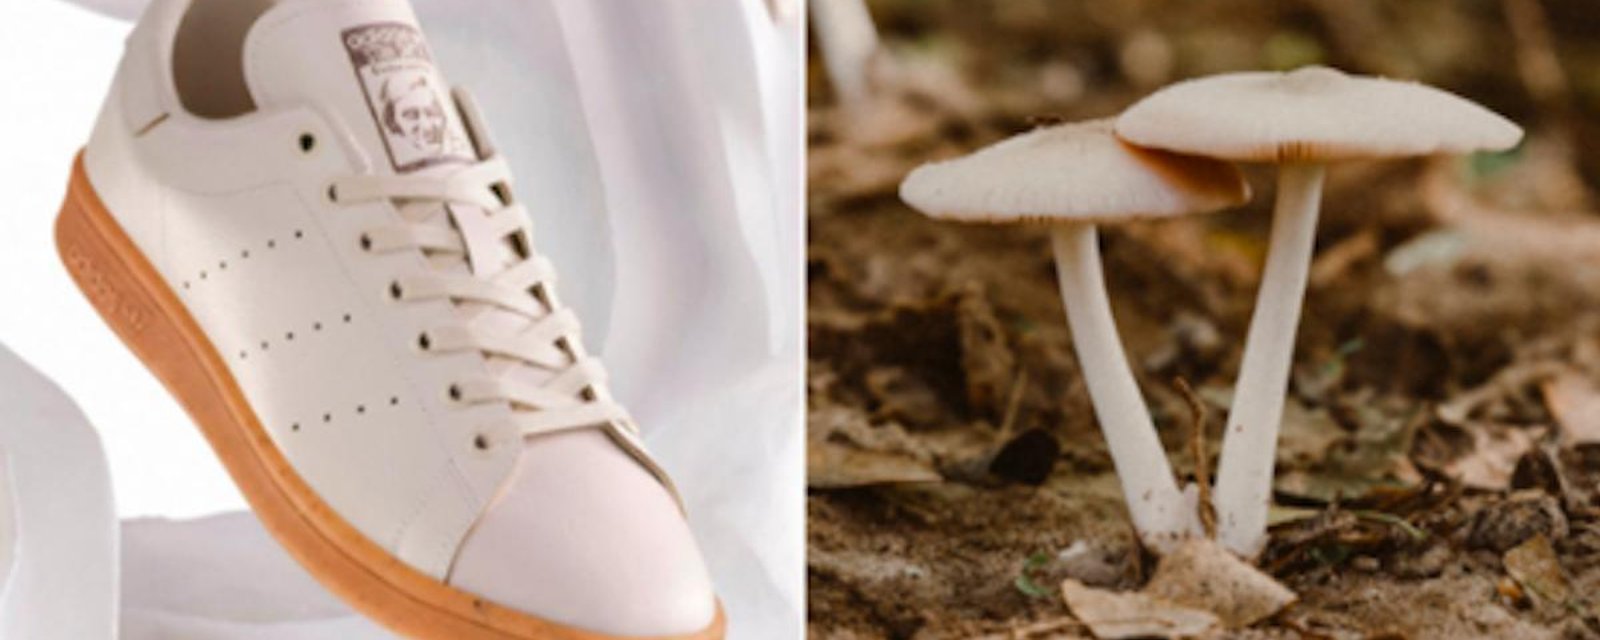 Adidas lance des chaussures fabriquées à partir de champignons